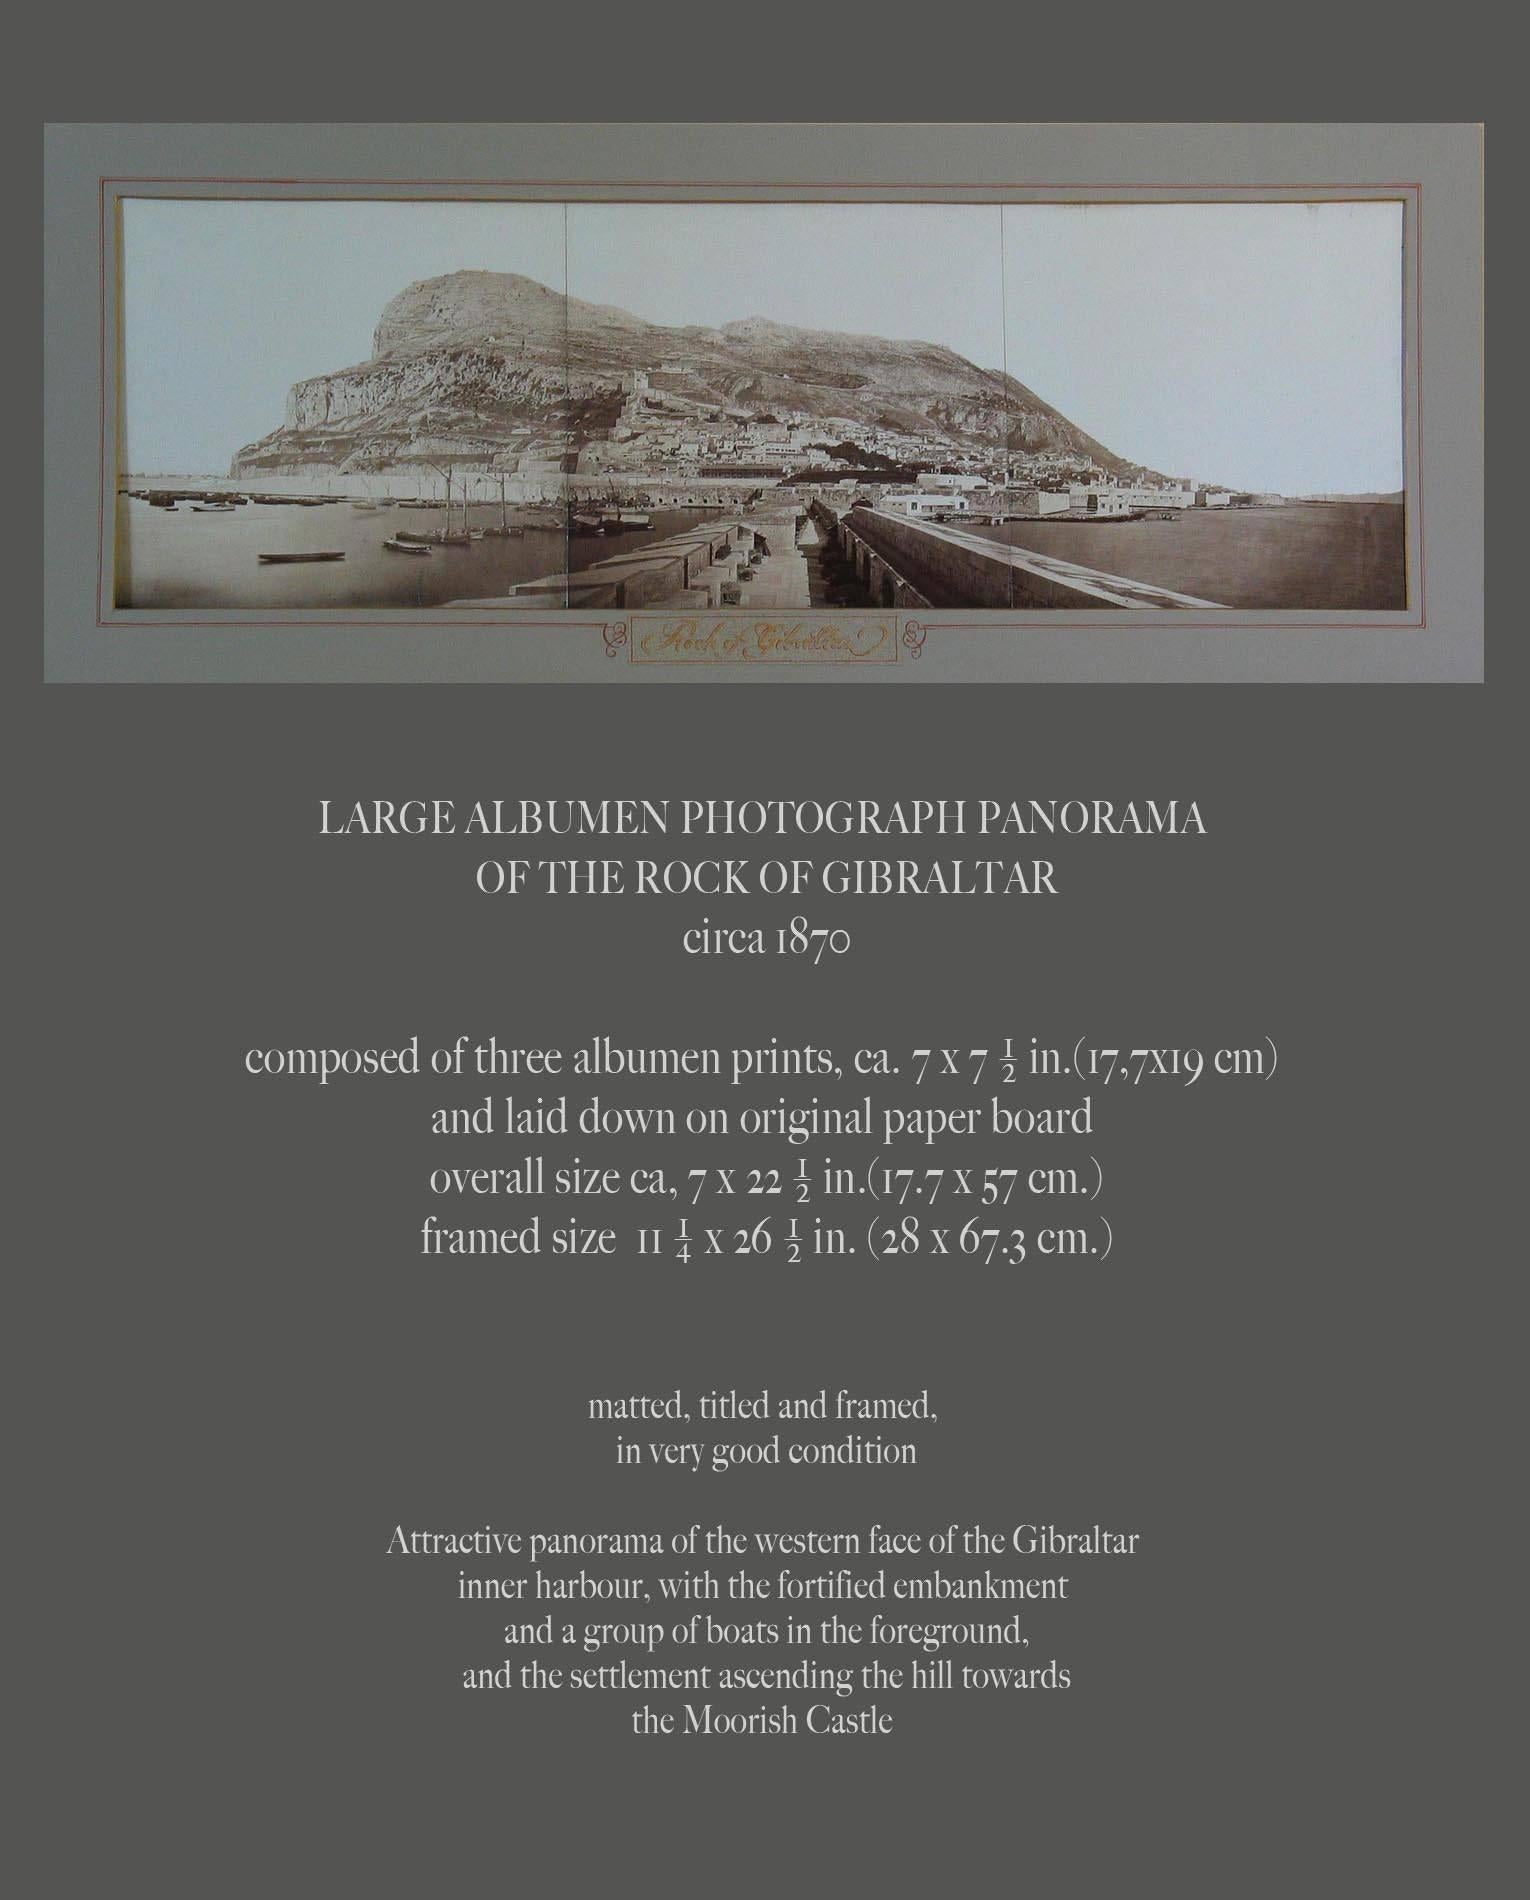 Große Albumenfotografie Panorama des Felsens von Gibraltar, um 1870,
Bestehend aus drei Albuminabzügen, ca. 7